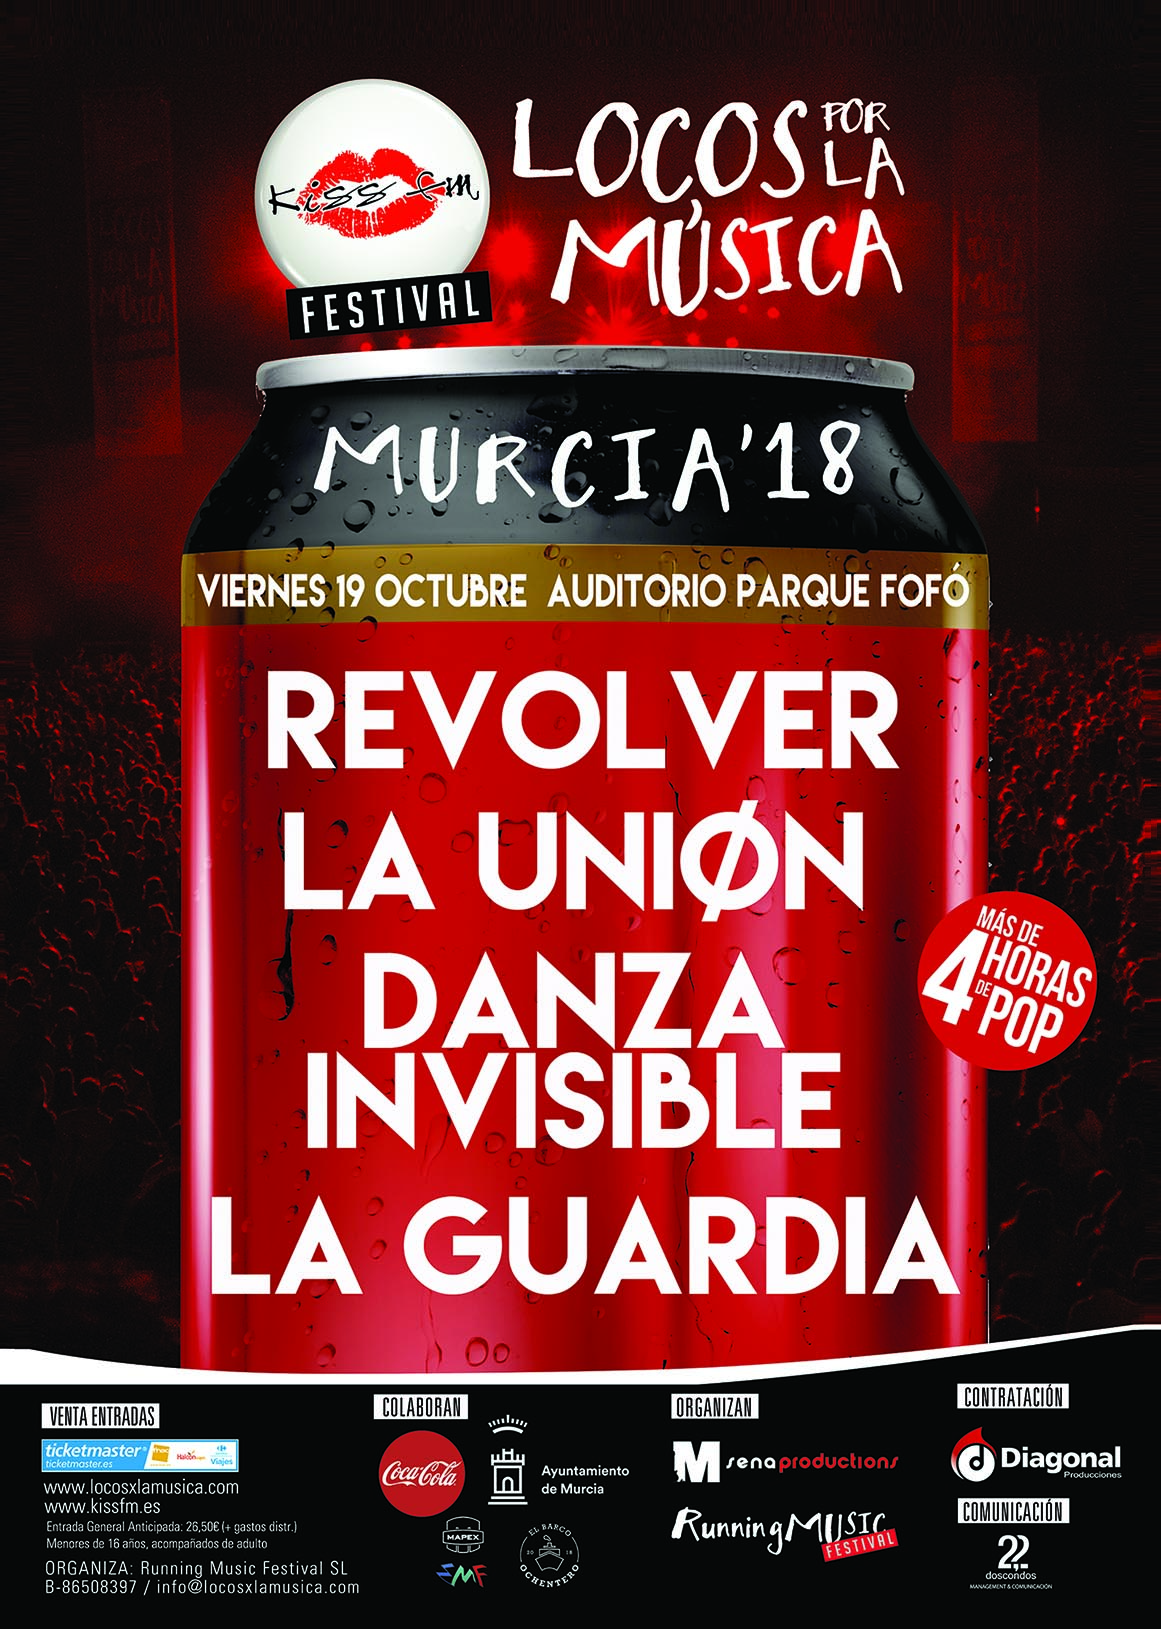 KISS FM presenta el festival ‘Locos por la Música’ en Murcia